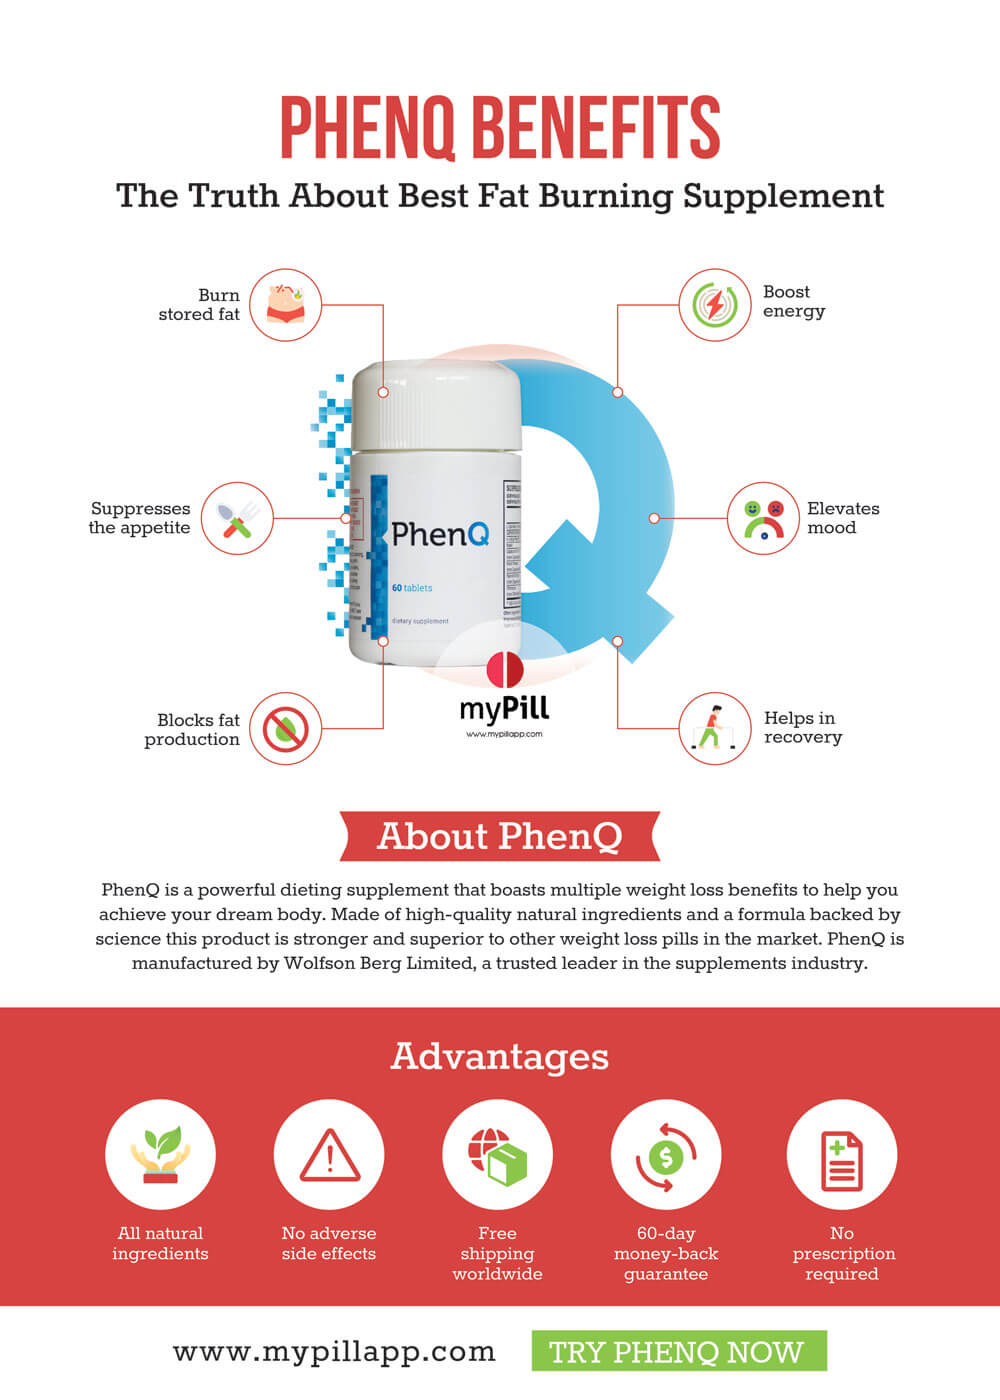 PhenQ benefits